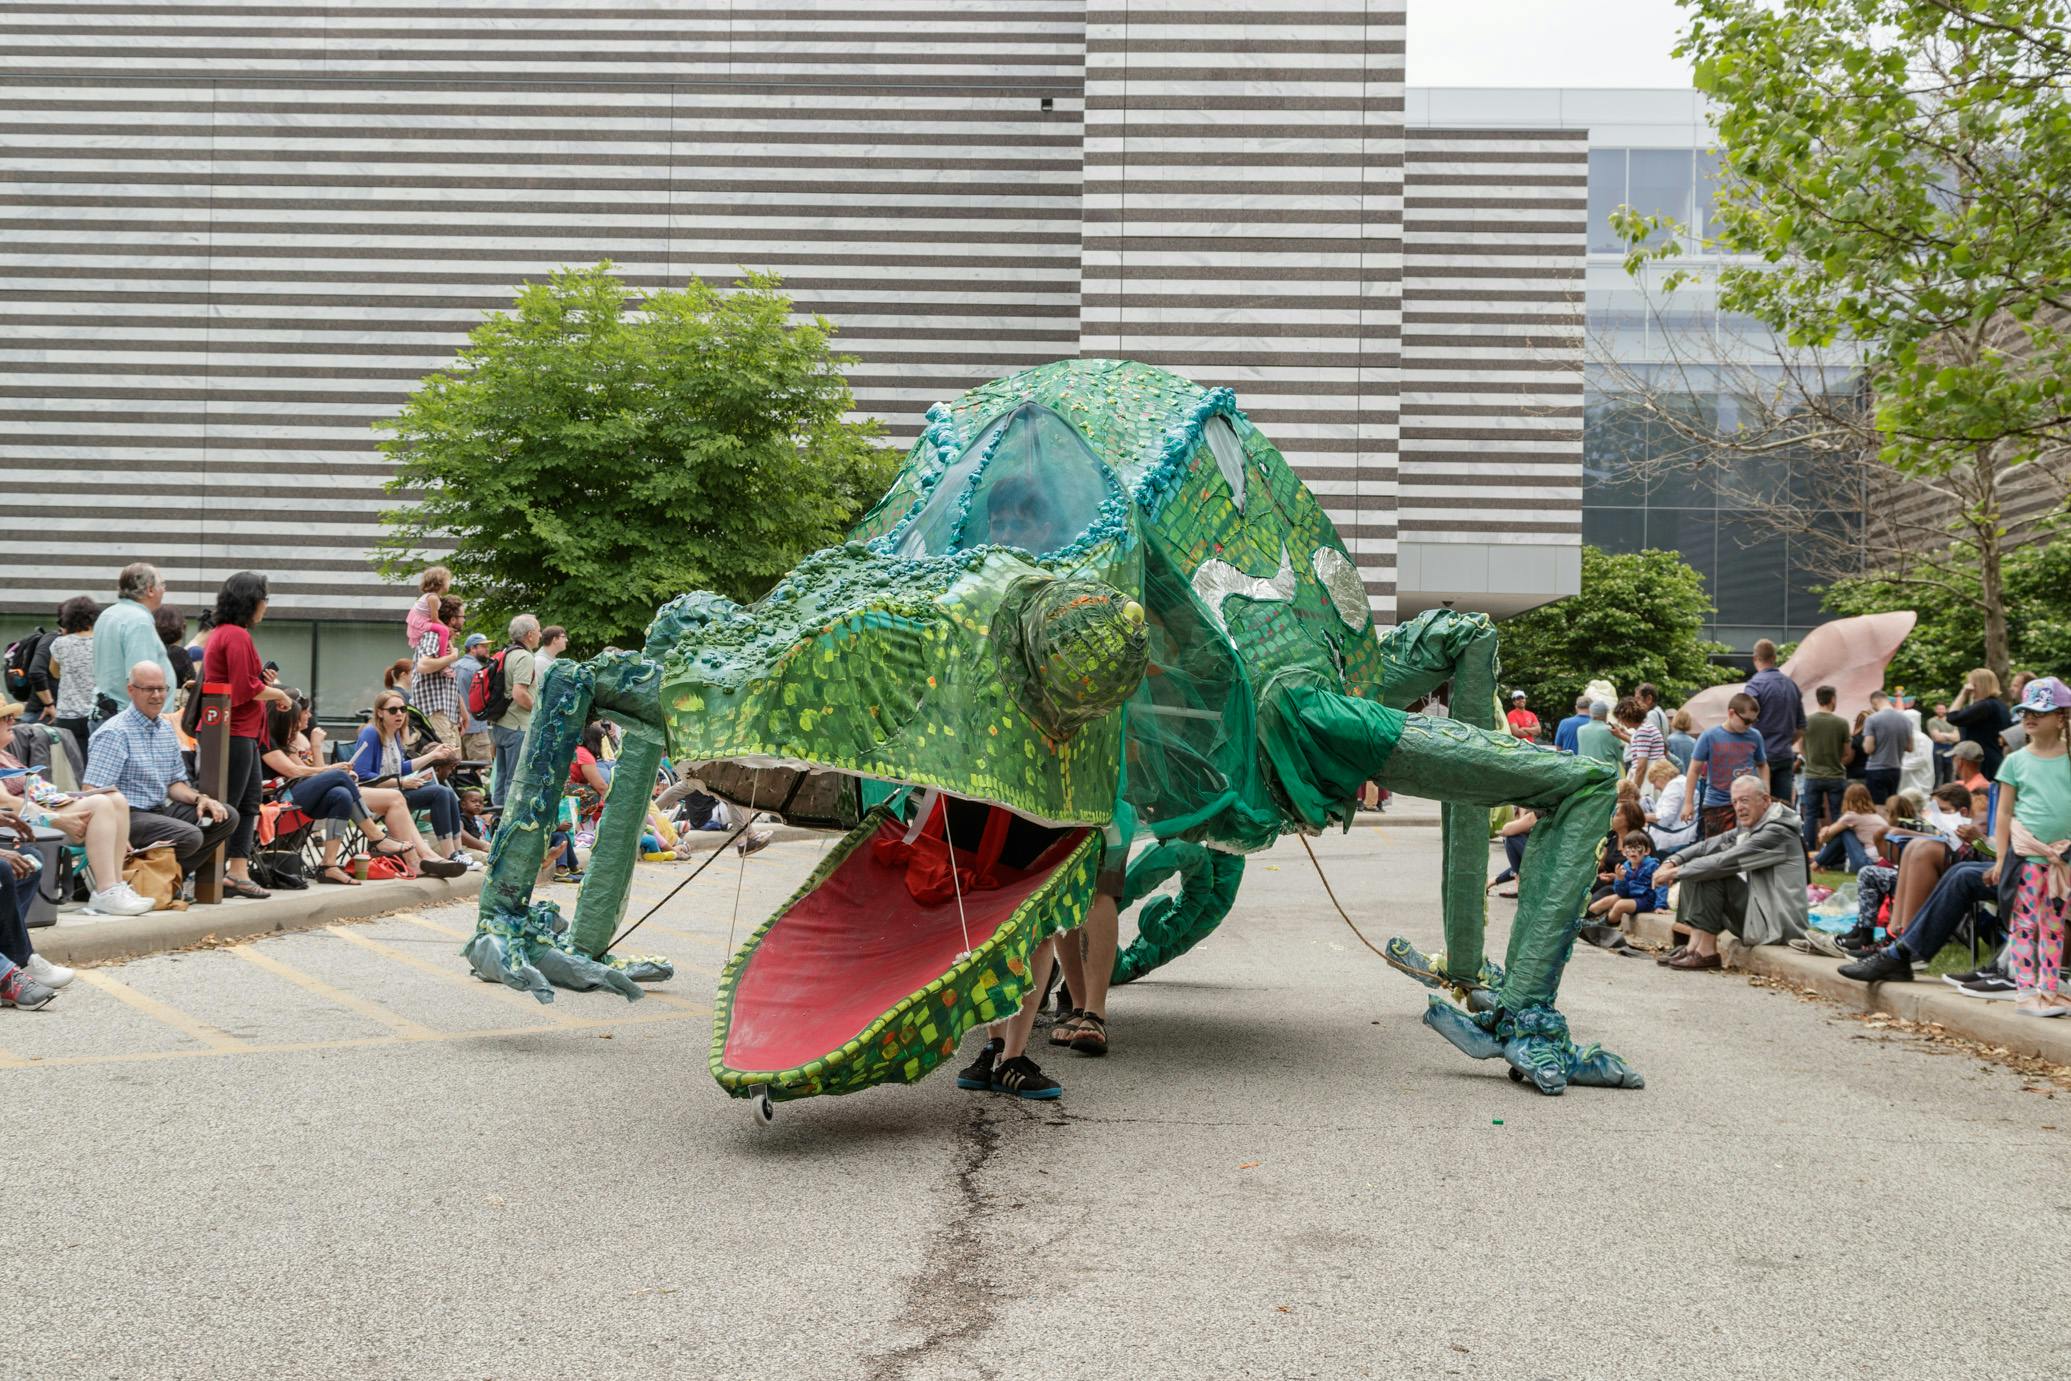 A chameleon parade float